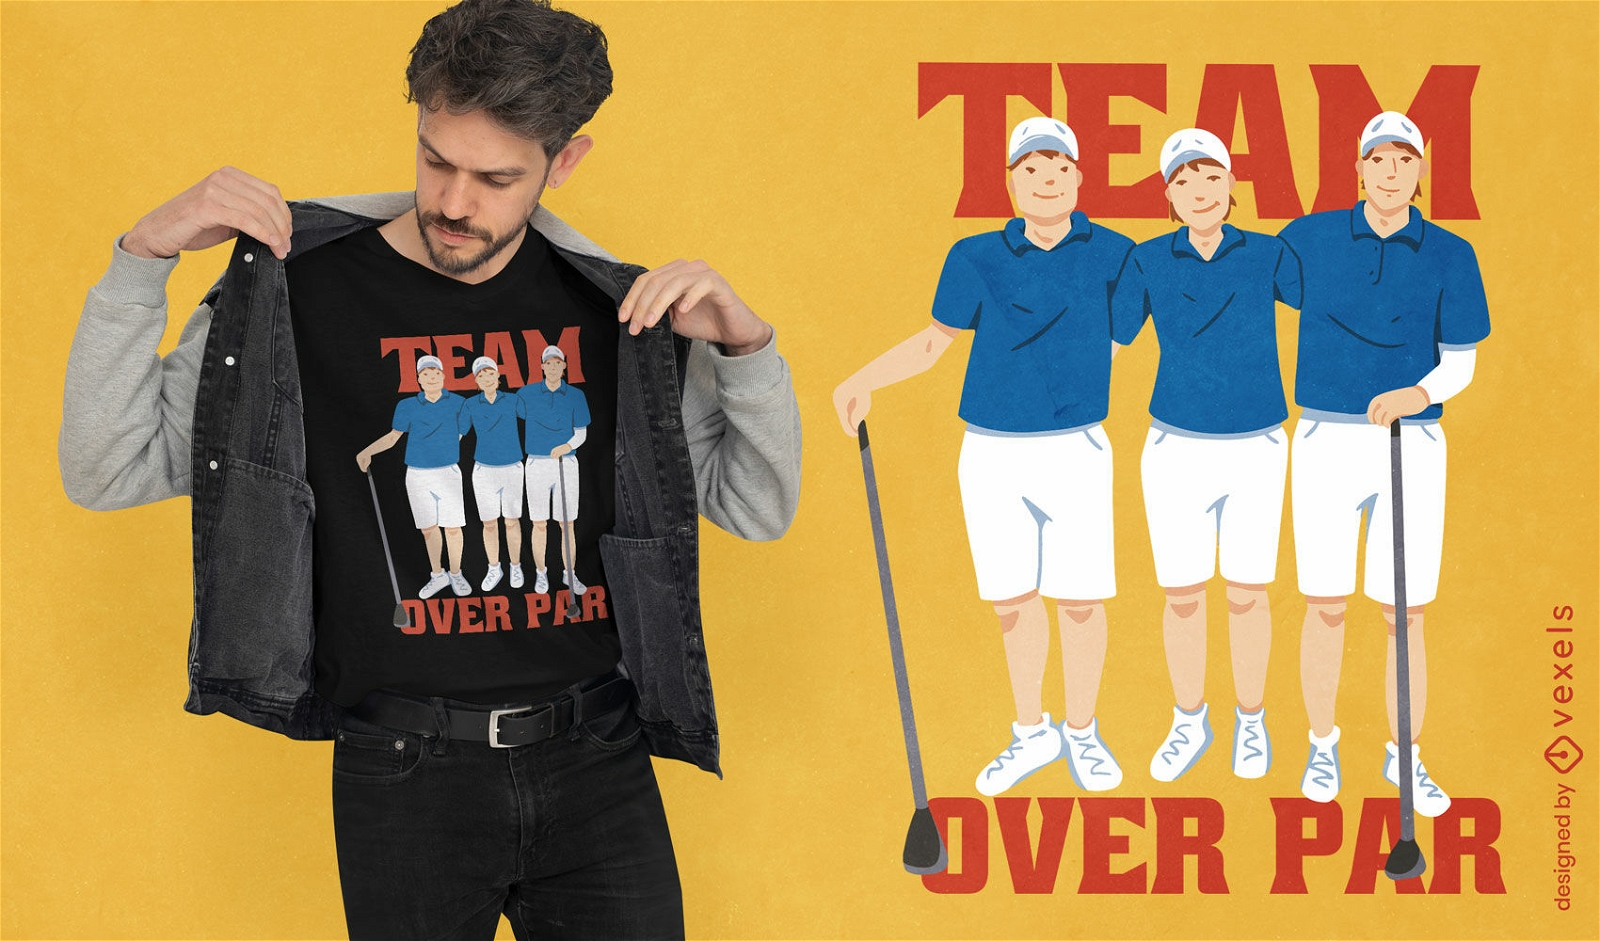 Golf ball sport team t-shirt design